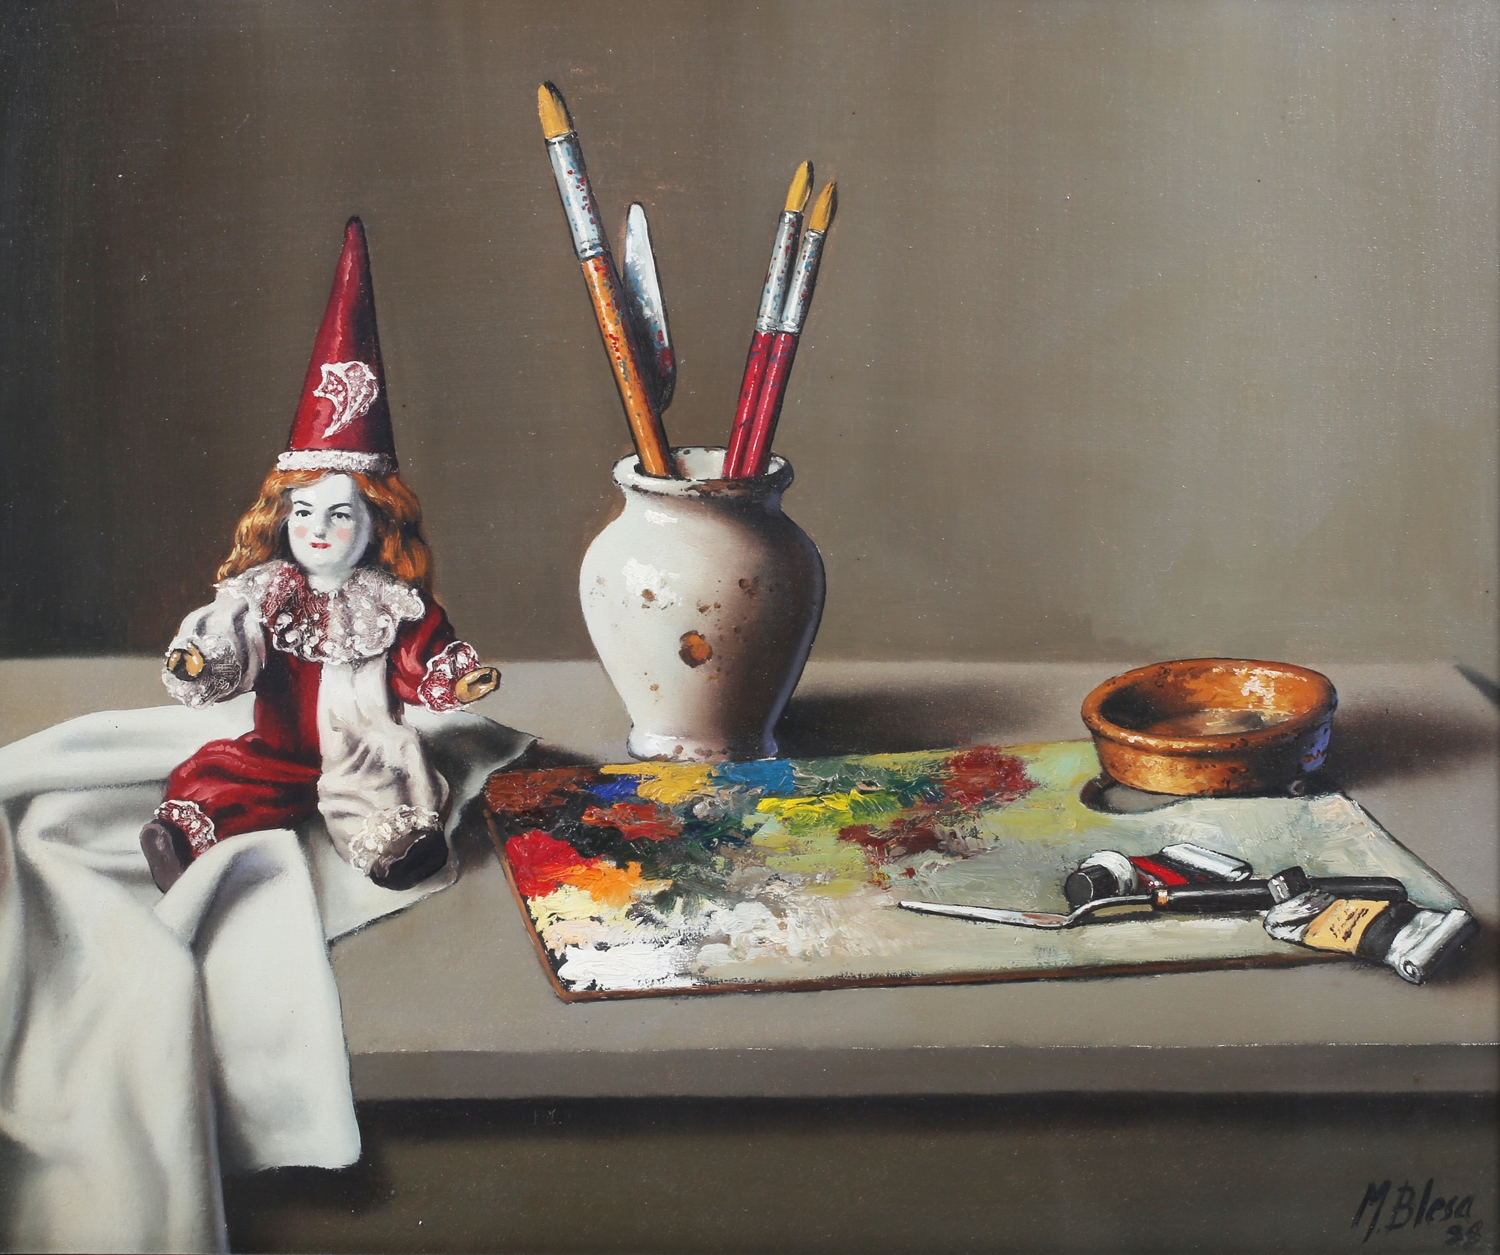 Manuel Blesa – Still Life with Clown Doll by Manuel Blesa, 20th century